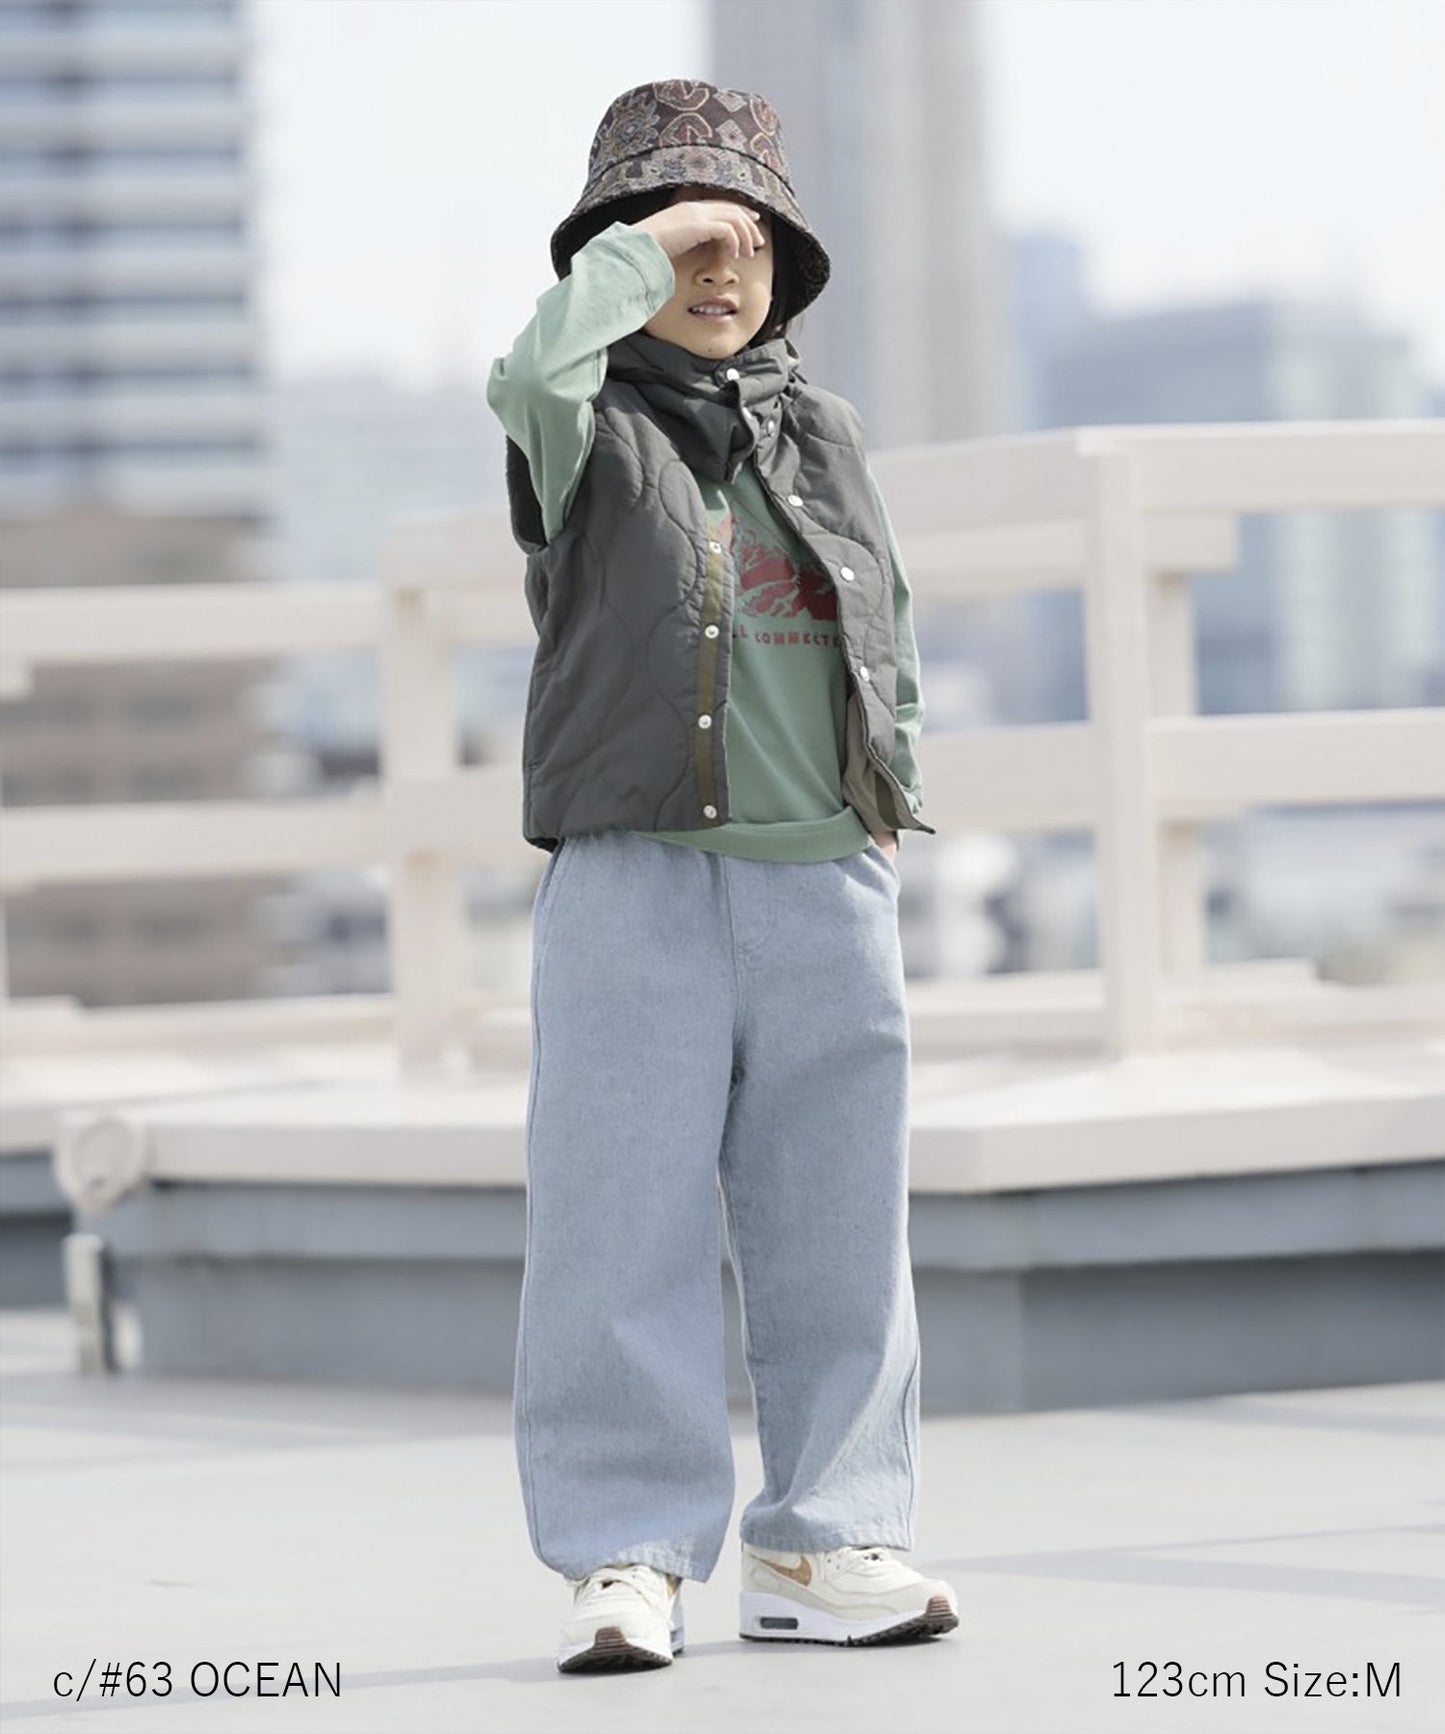 【環保材質】Re DENIM PAINTER PANTS 再生棉牛仔布 全年材質【100-145cm】